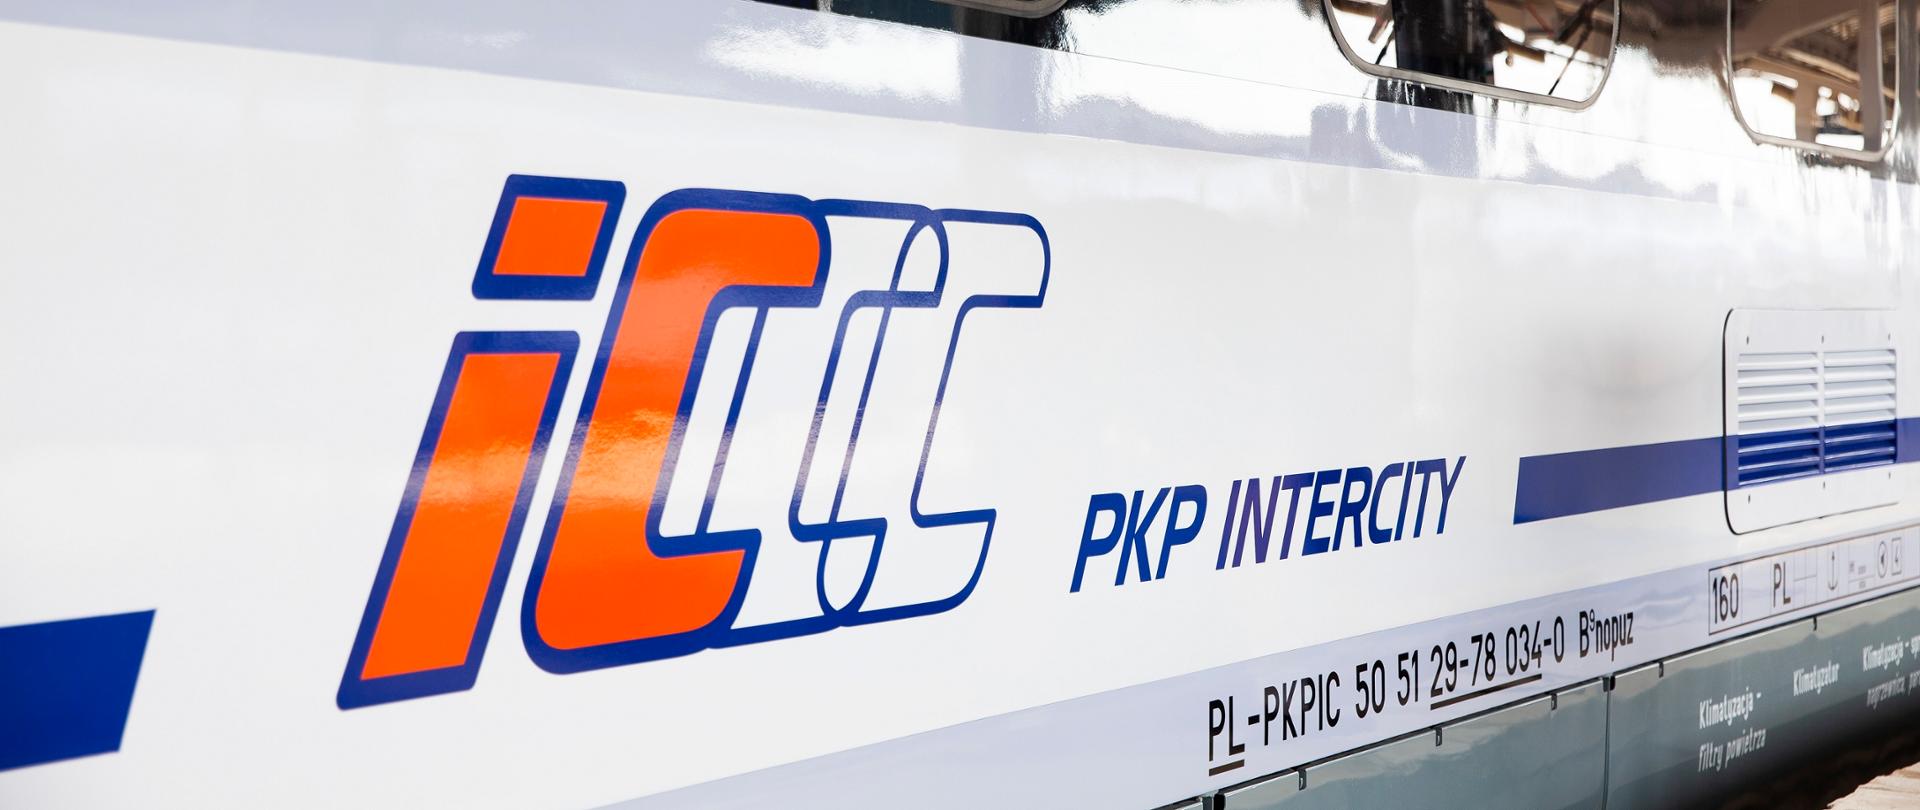 Logotyp spółki PKP Intercity